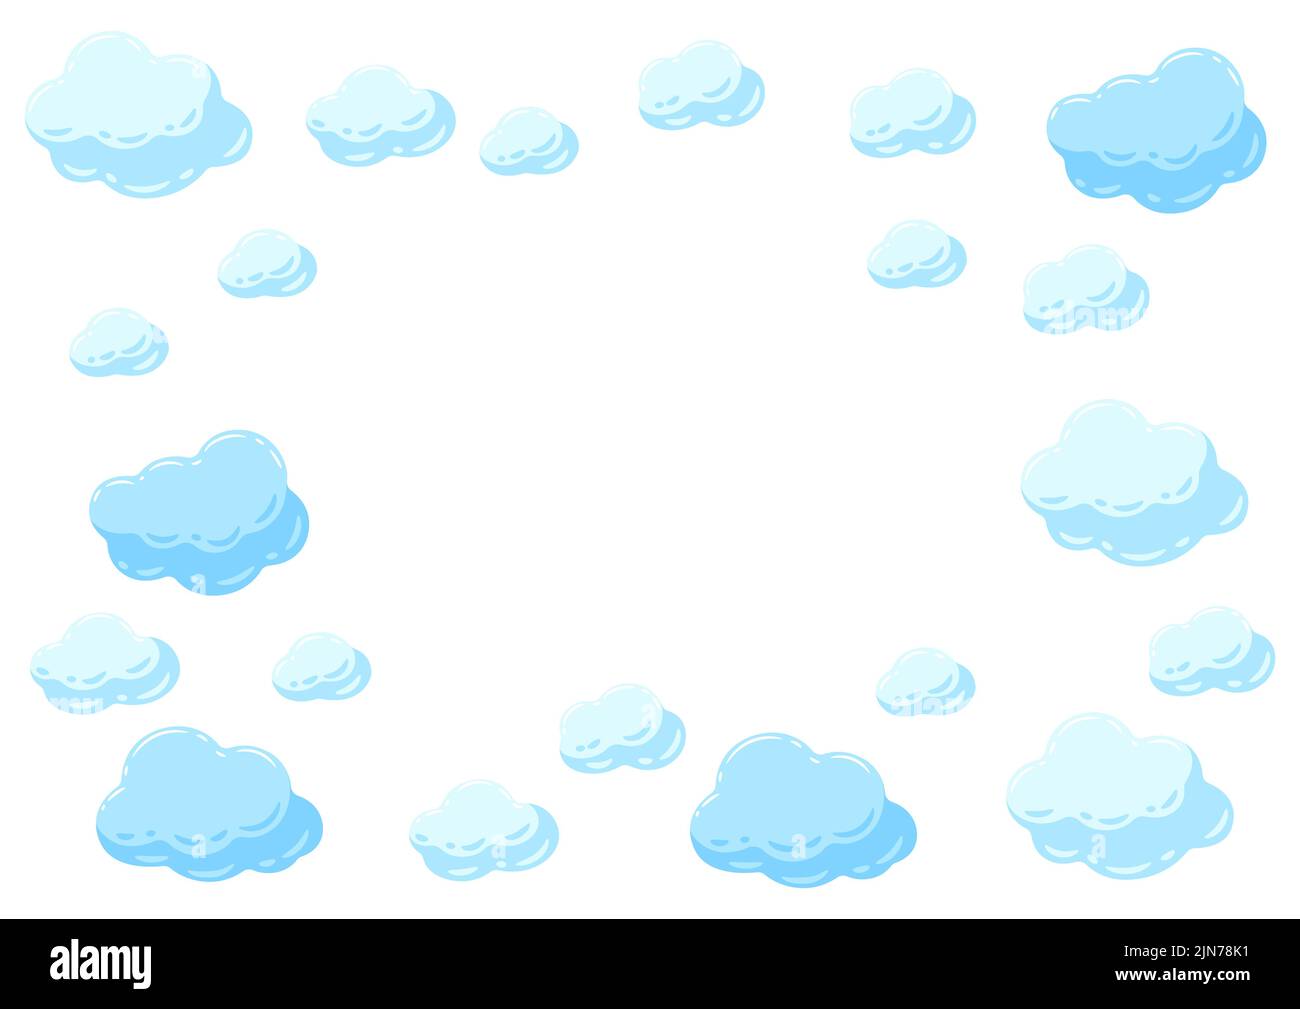 Rahmen mit blauen Wolken. Cartoon-Bild des bewölkten Himmels. Stock Vektor